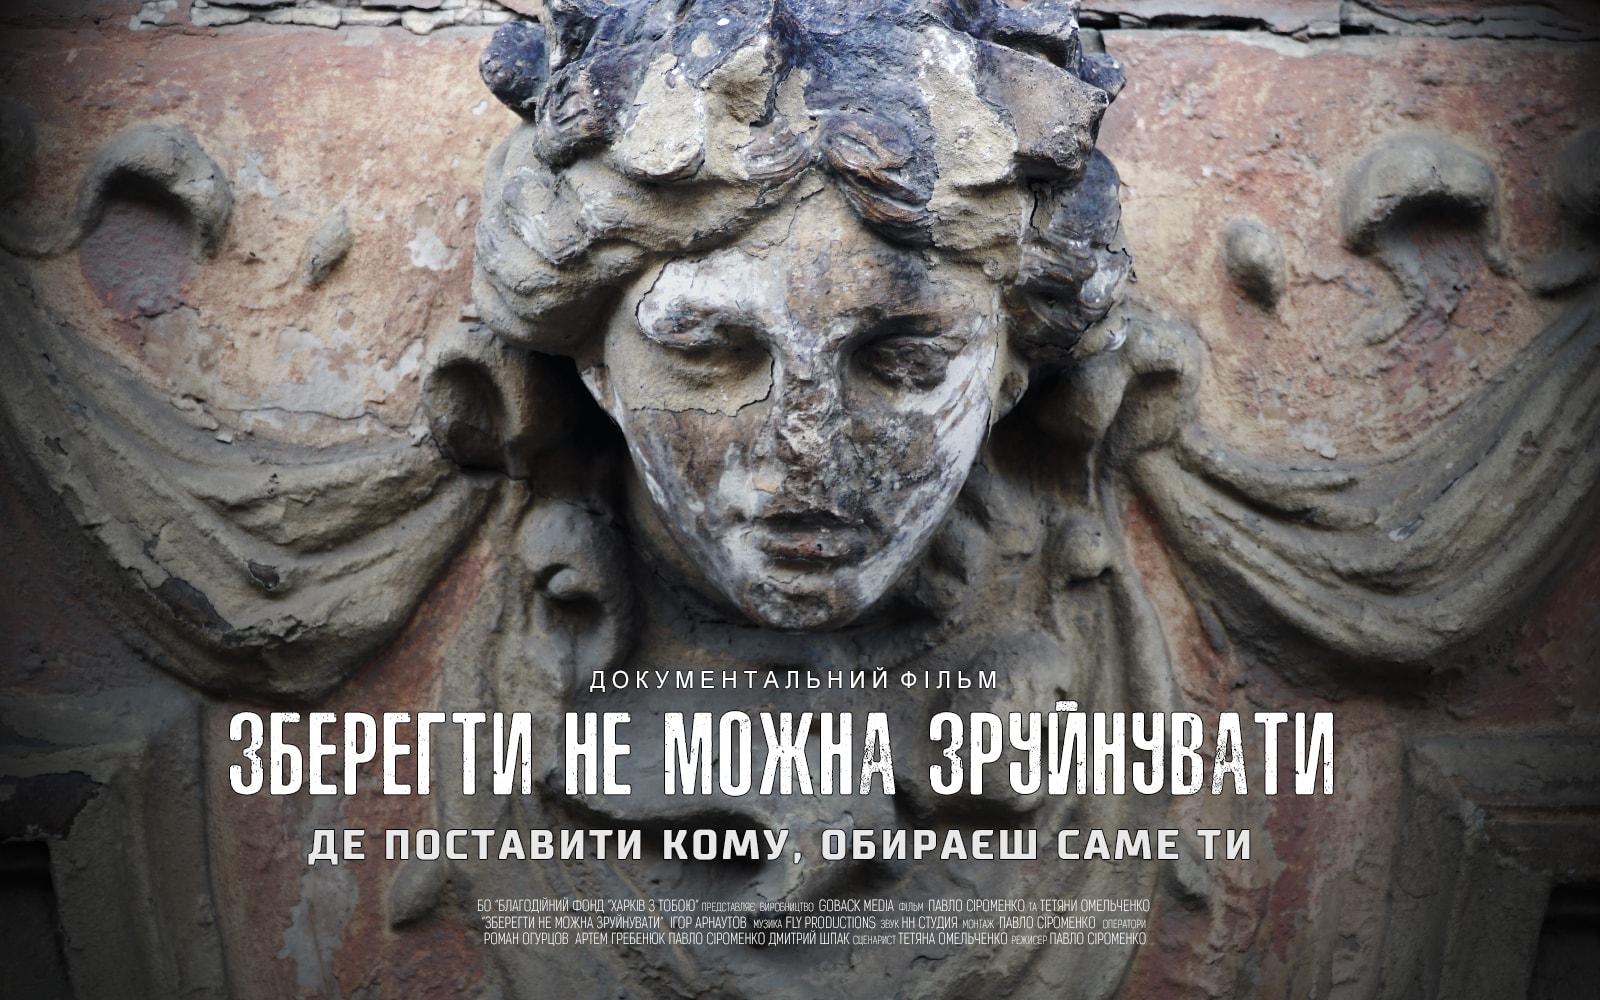 В Доме кинематографистов покажут документальный фильм о сохранении архитектурных памяток Украины